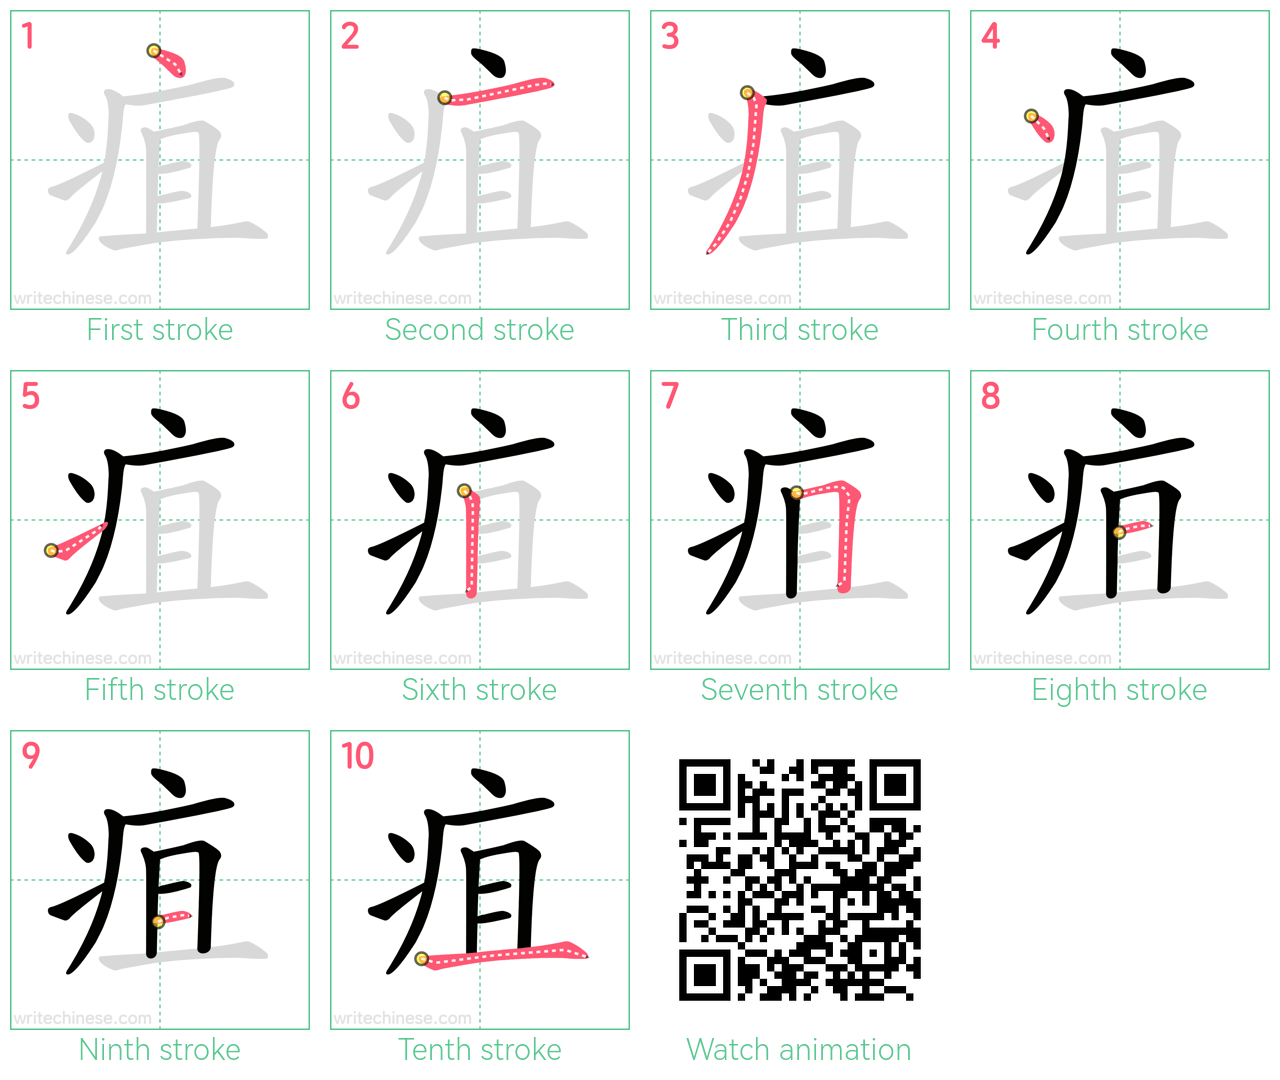 疽 step-by-step stroke order diagrams